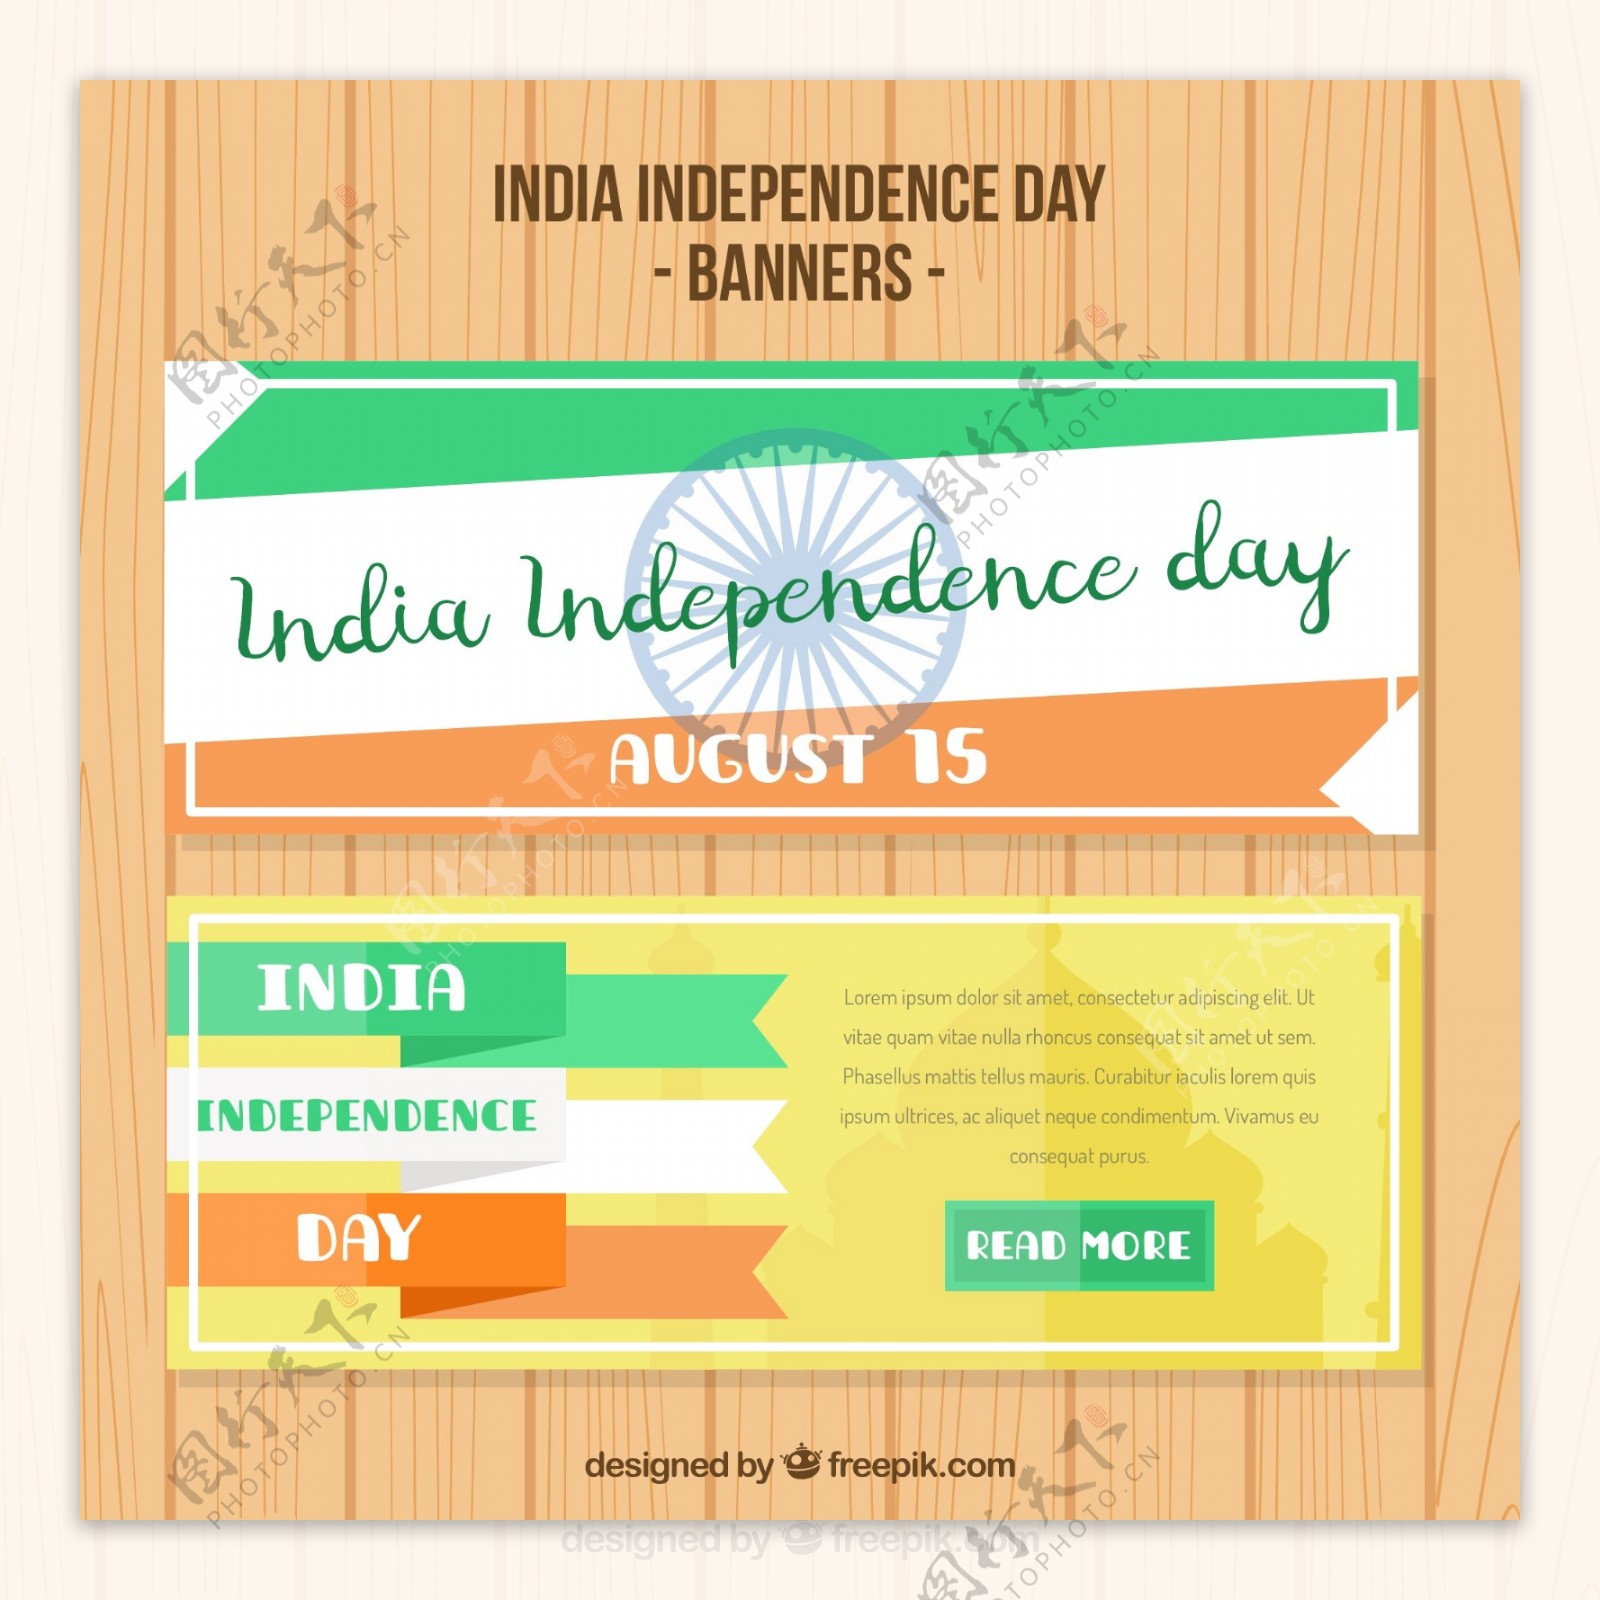 抽象印度独立日横幅